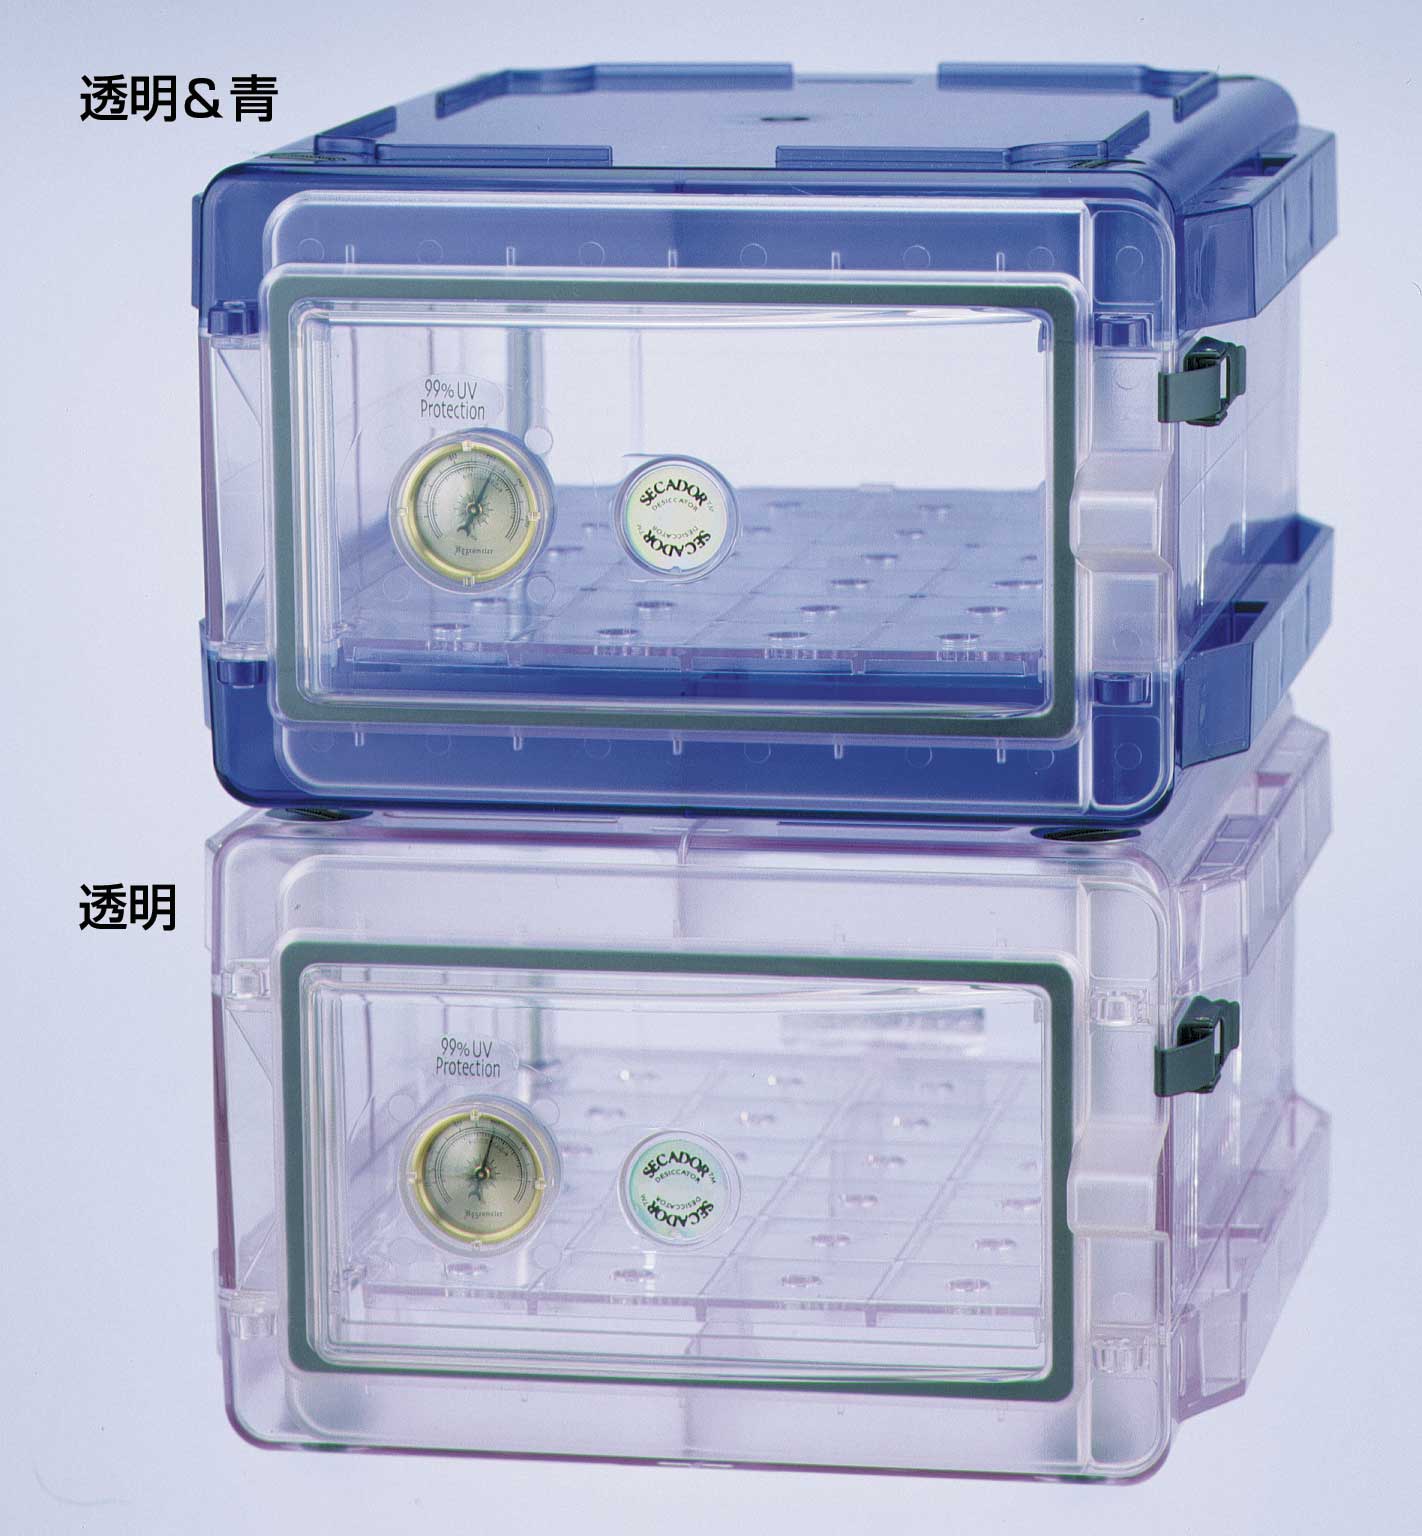 secador1.0透明、蓝色手动干燥箱42071-0006